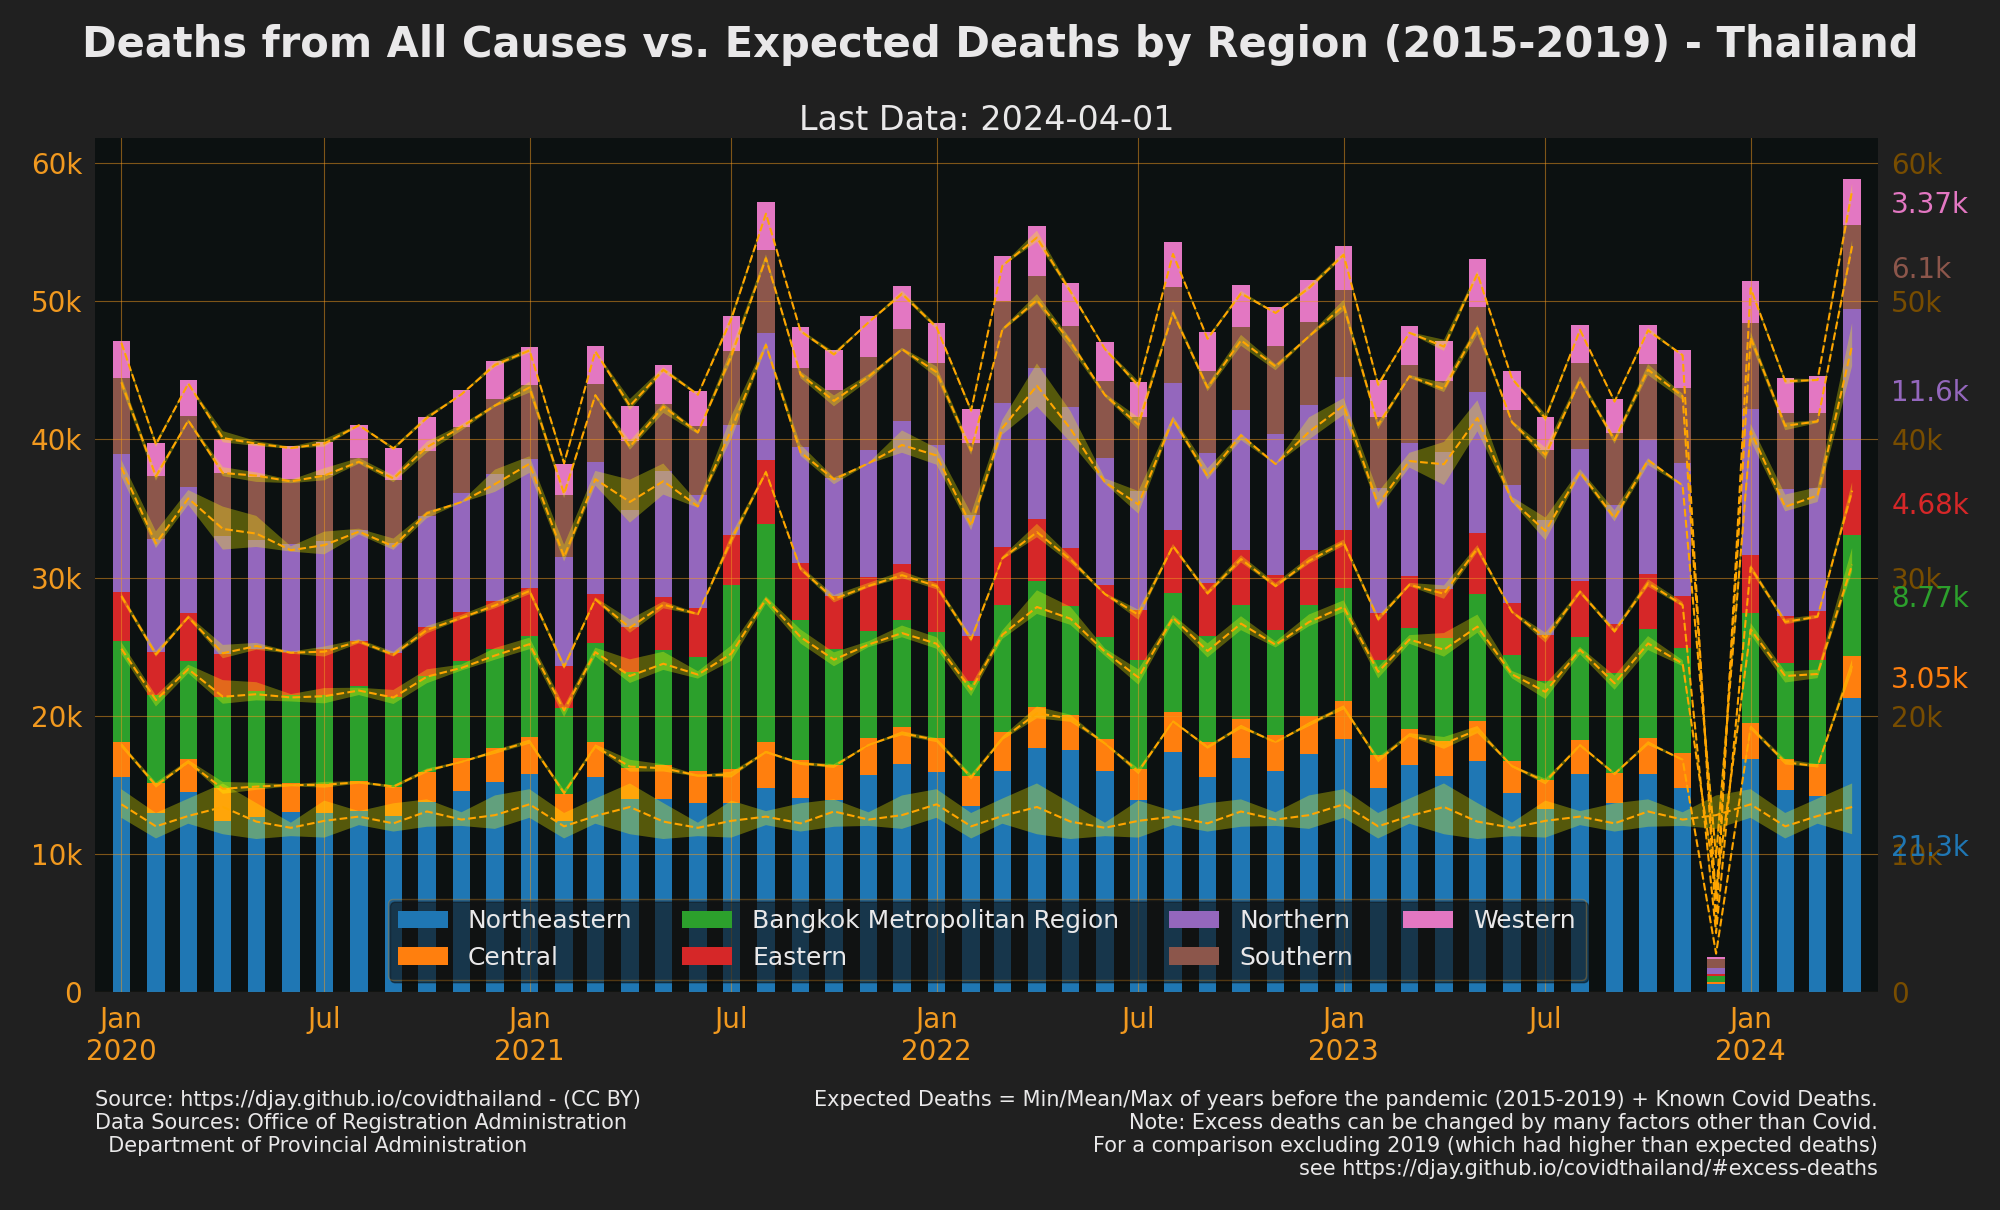 Thailand Excess Deaths by Region